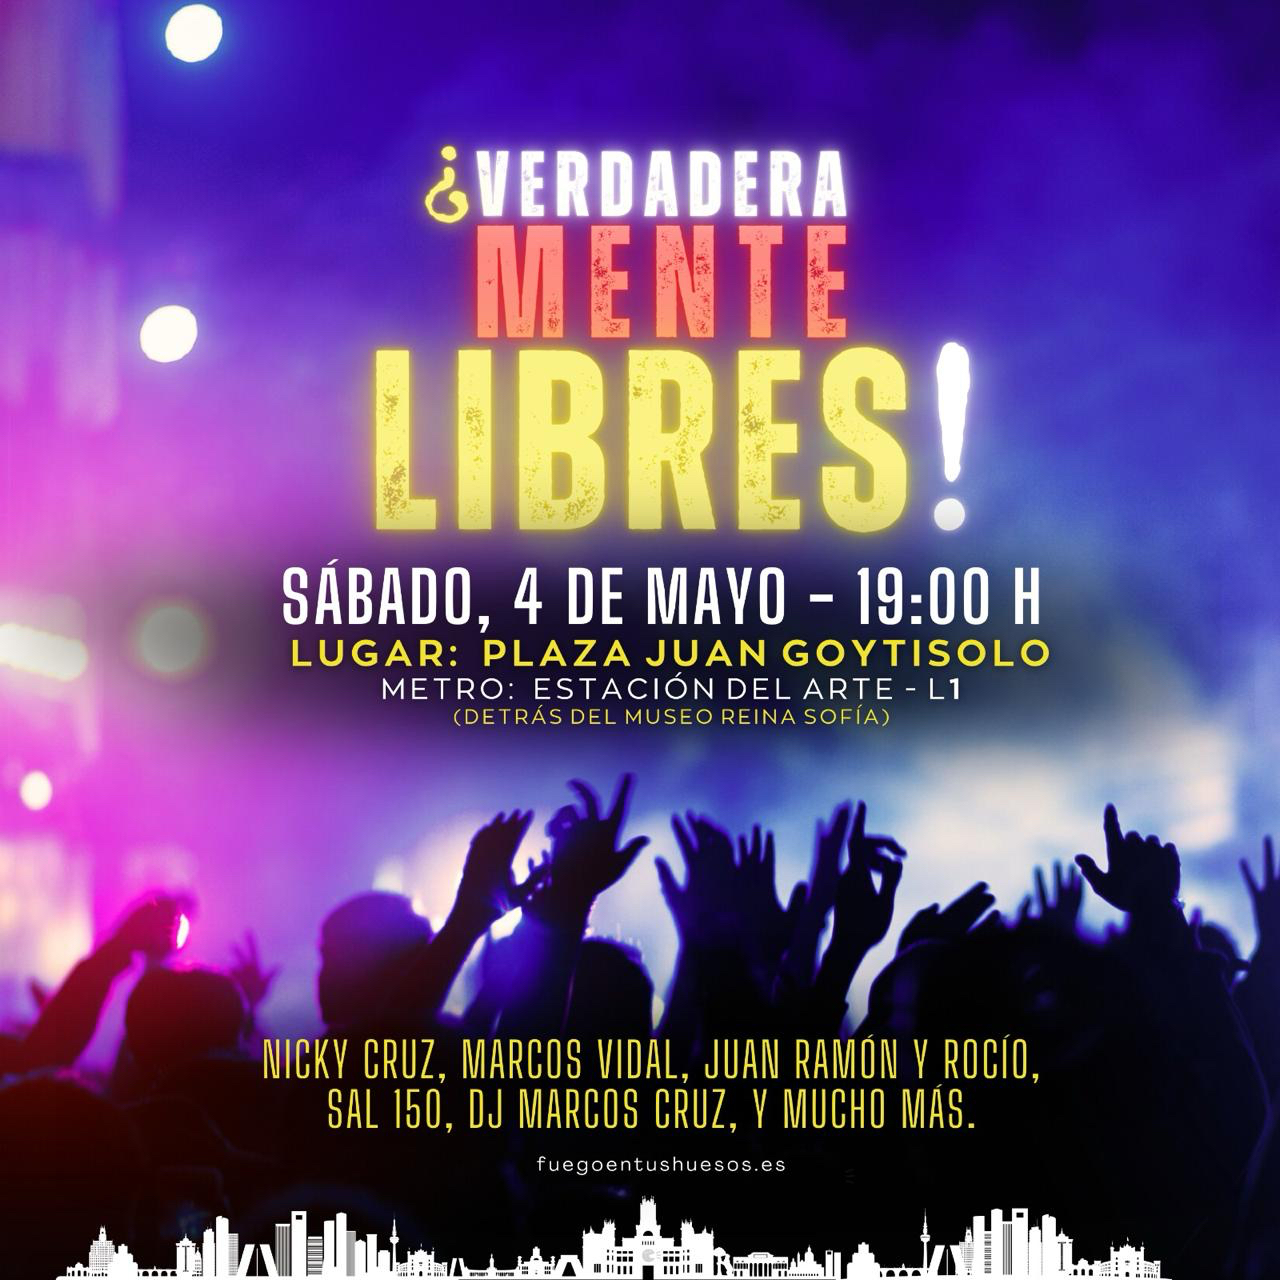 ¿Verdaderamente Libres!: Un evento transformador con Nicky Cruz y Marcos Vidal en Madrid